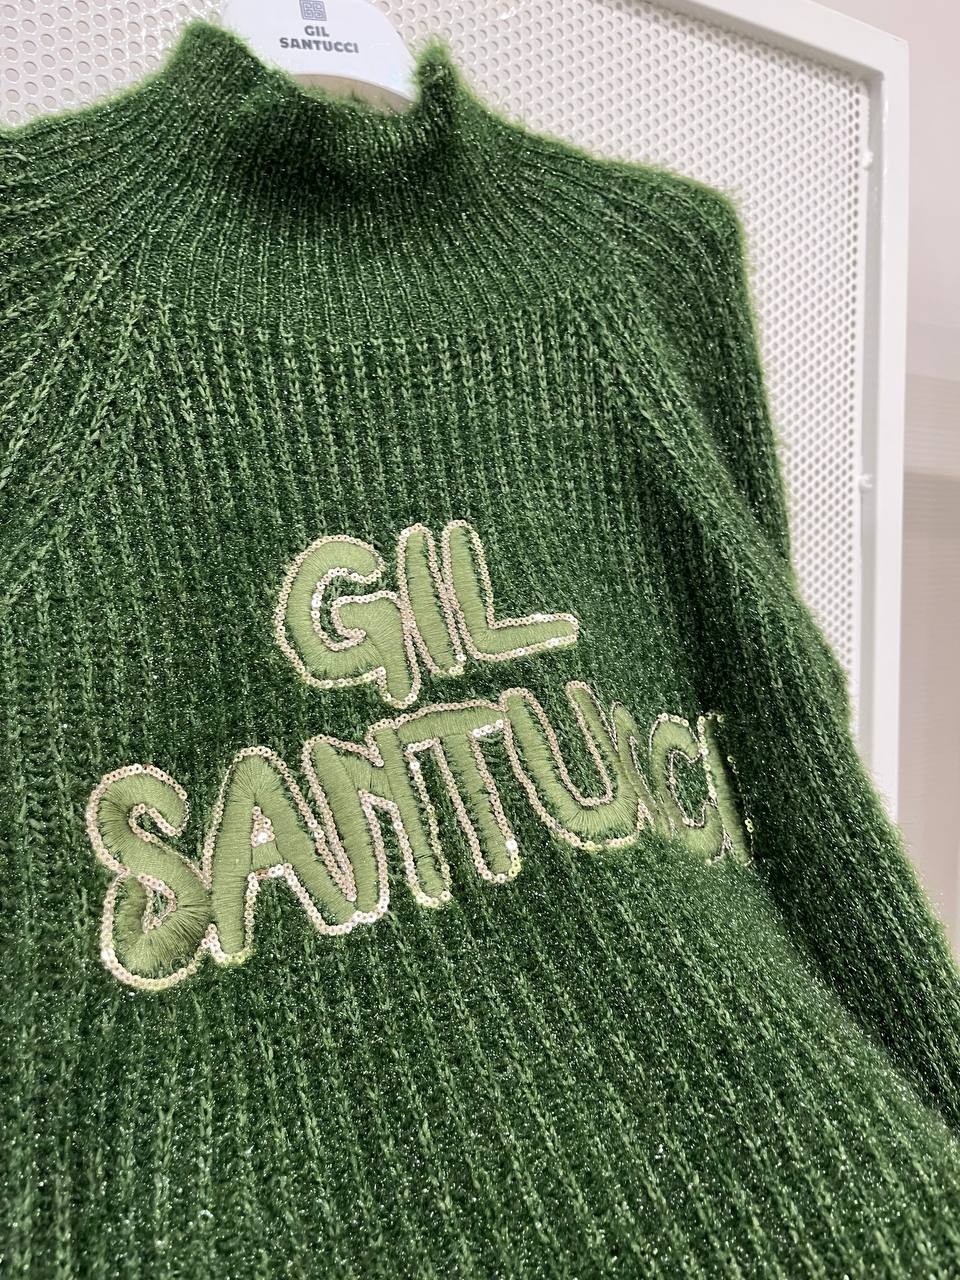 Итальянская одежда, бренд Gil Santucci, арт. 73100900